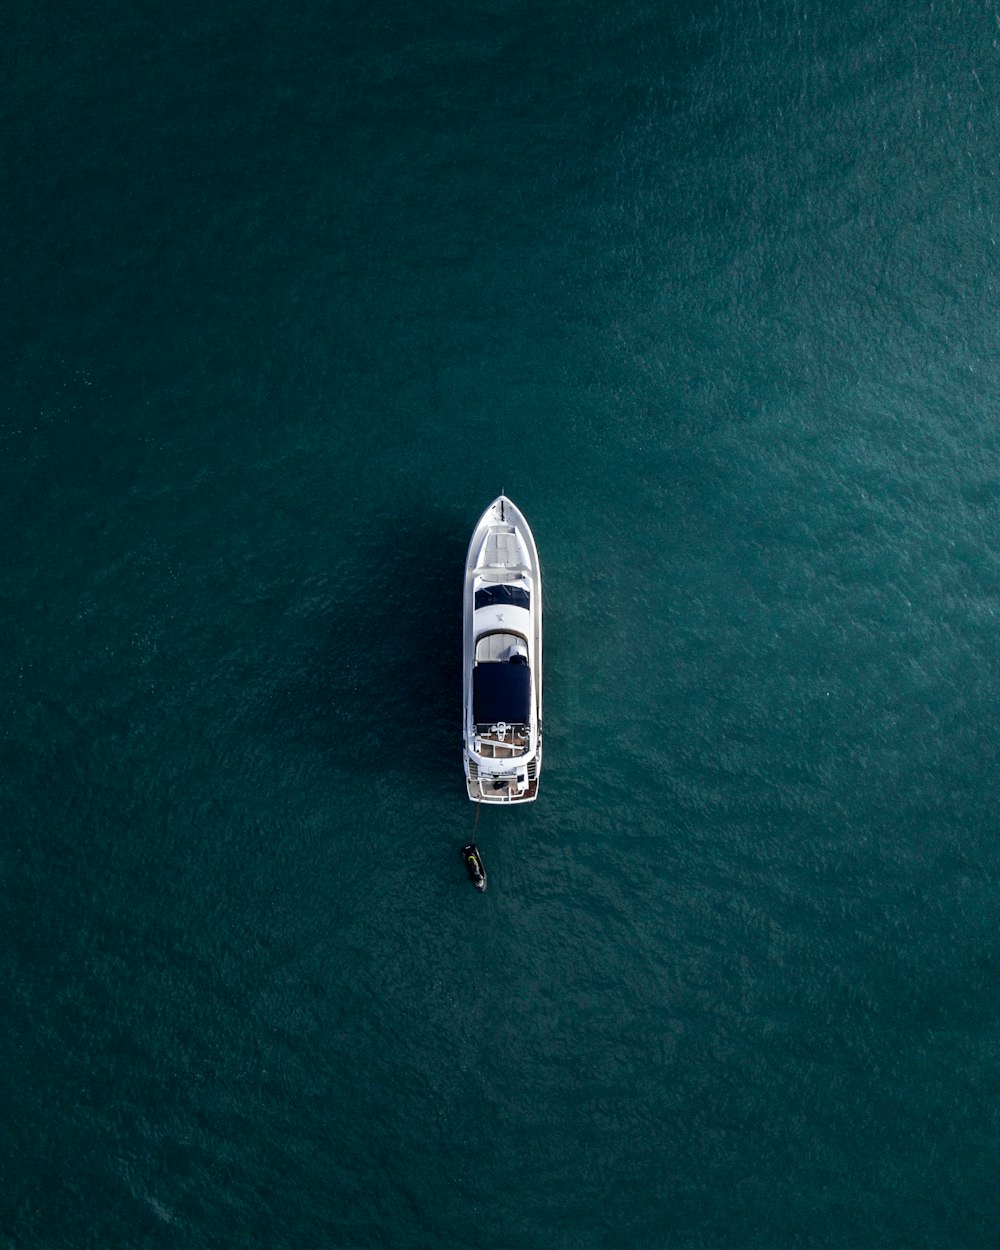 穏やかな海に浮かぶ白いヨットの航空写真